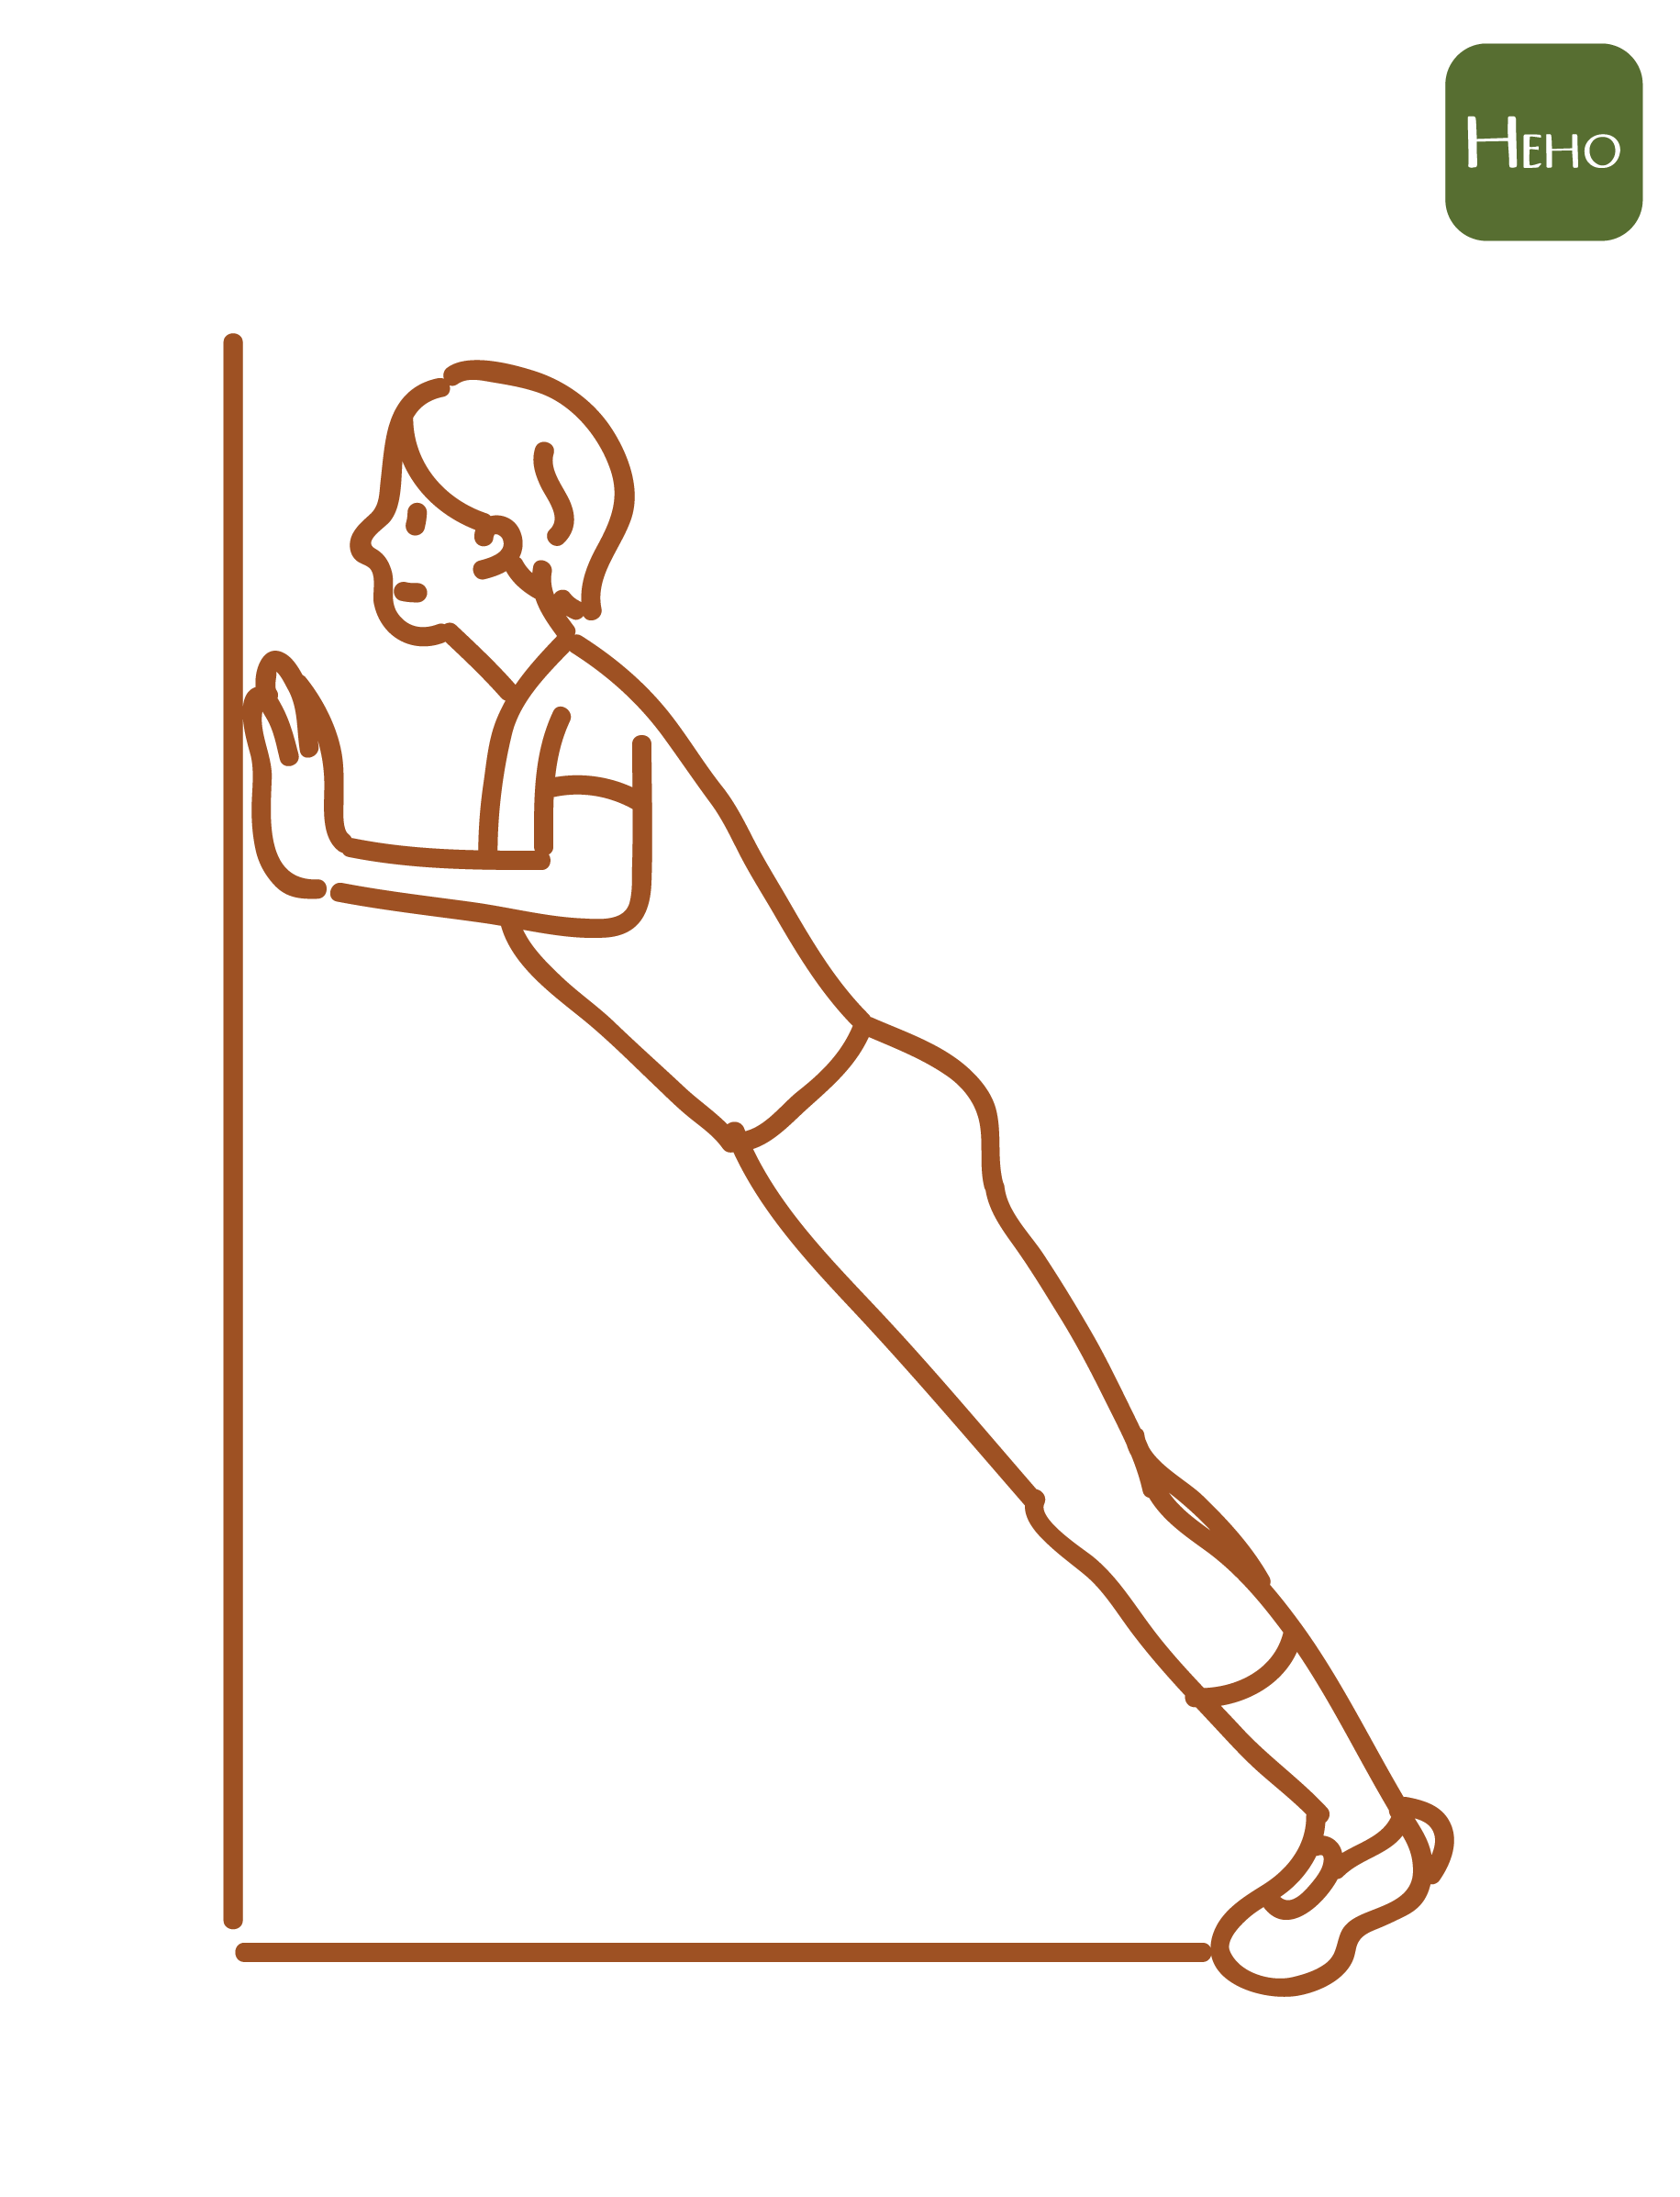 每週 2 次肌肉訓練健康滿分！懶出門推牆壁就可以長肌肉